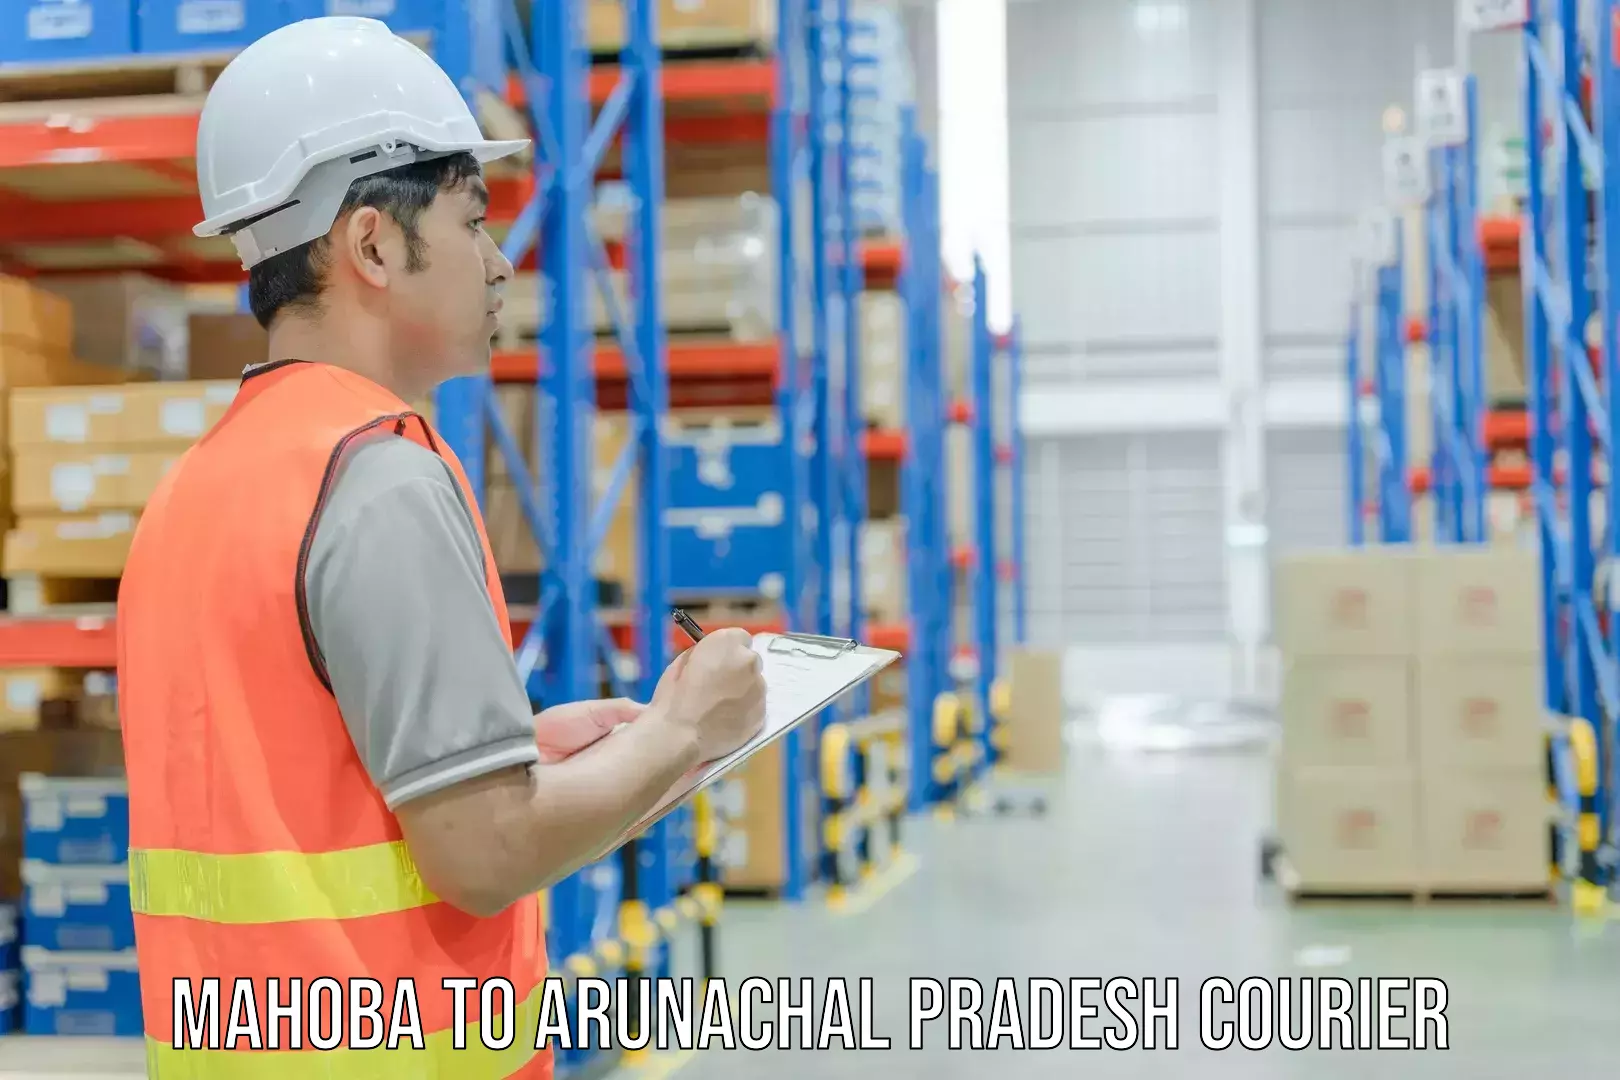 Business shipping needs Mahoba to Arunachal Pradesh